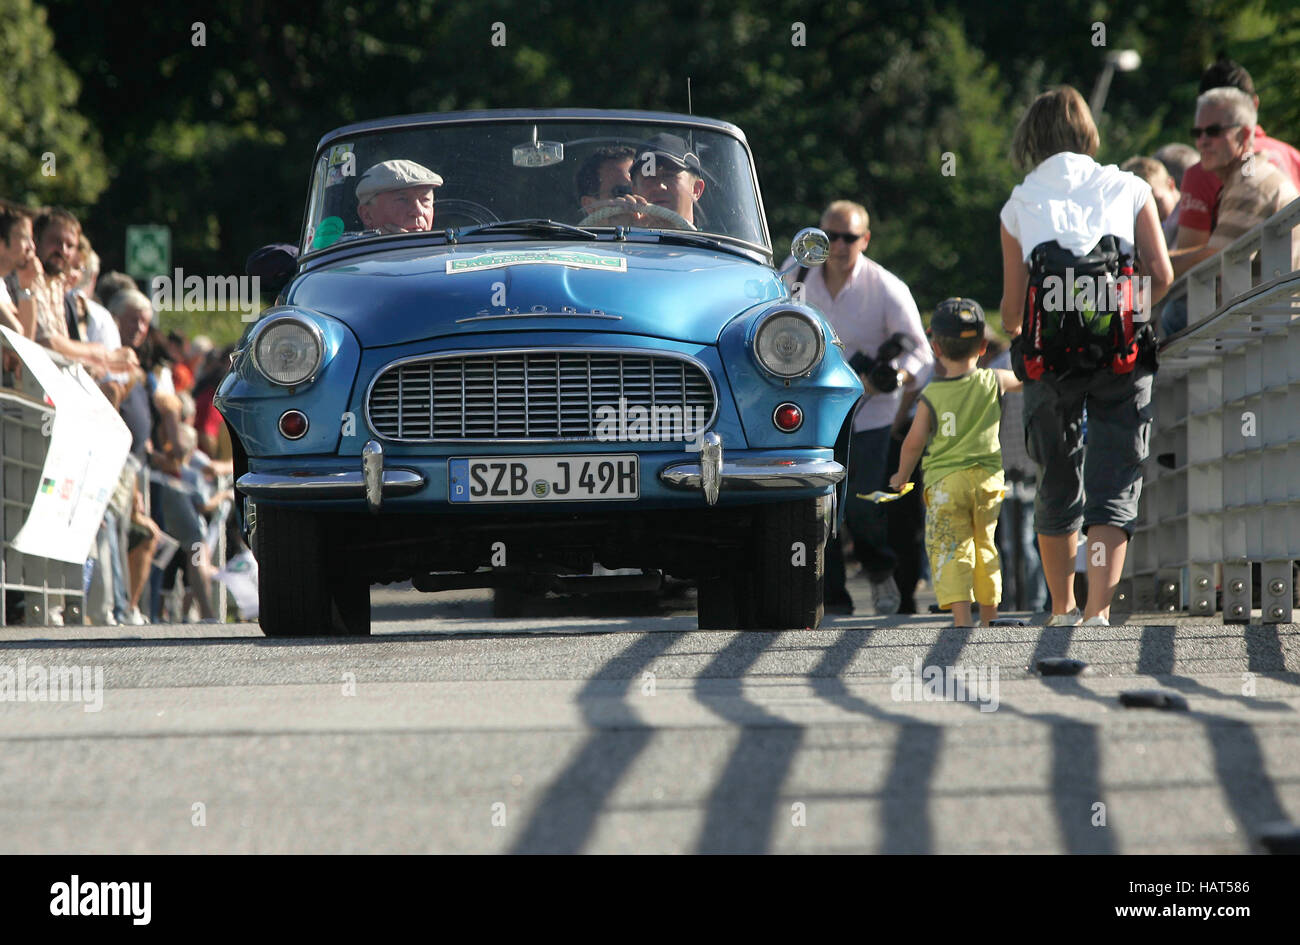 Location à l'arrivée de la Sachsen Classic vintage car rally, sur la gauche dans la voiture Peter Sodann, par le fabricant en cristal Banque D'Images